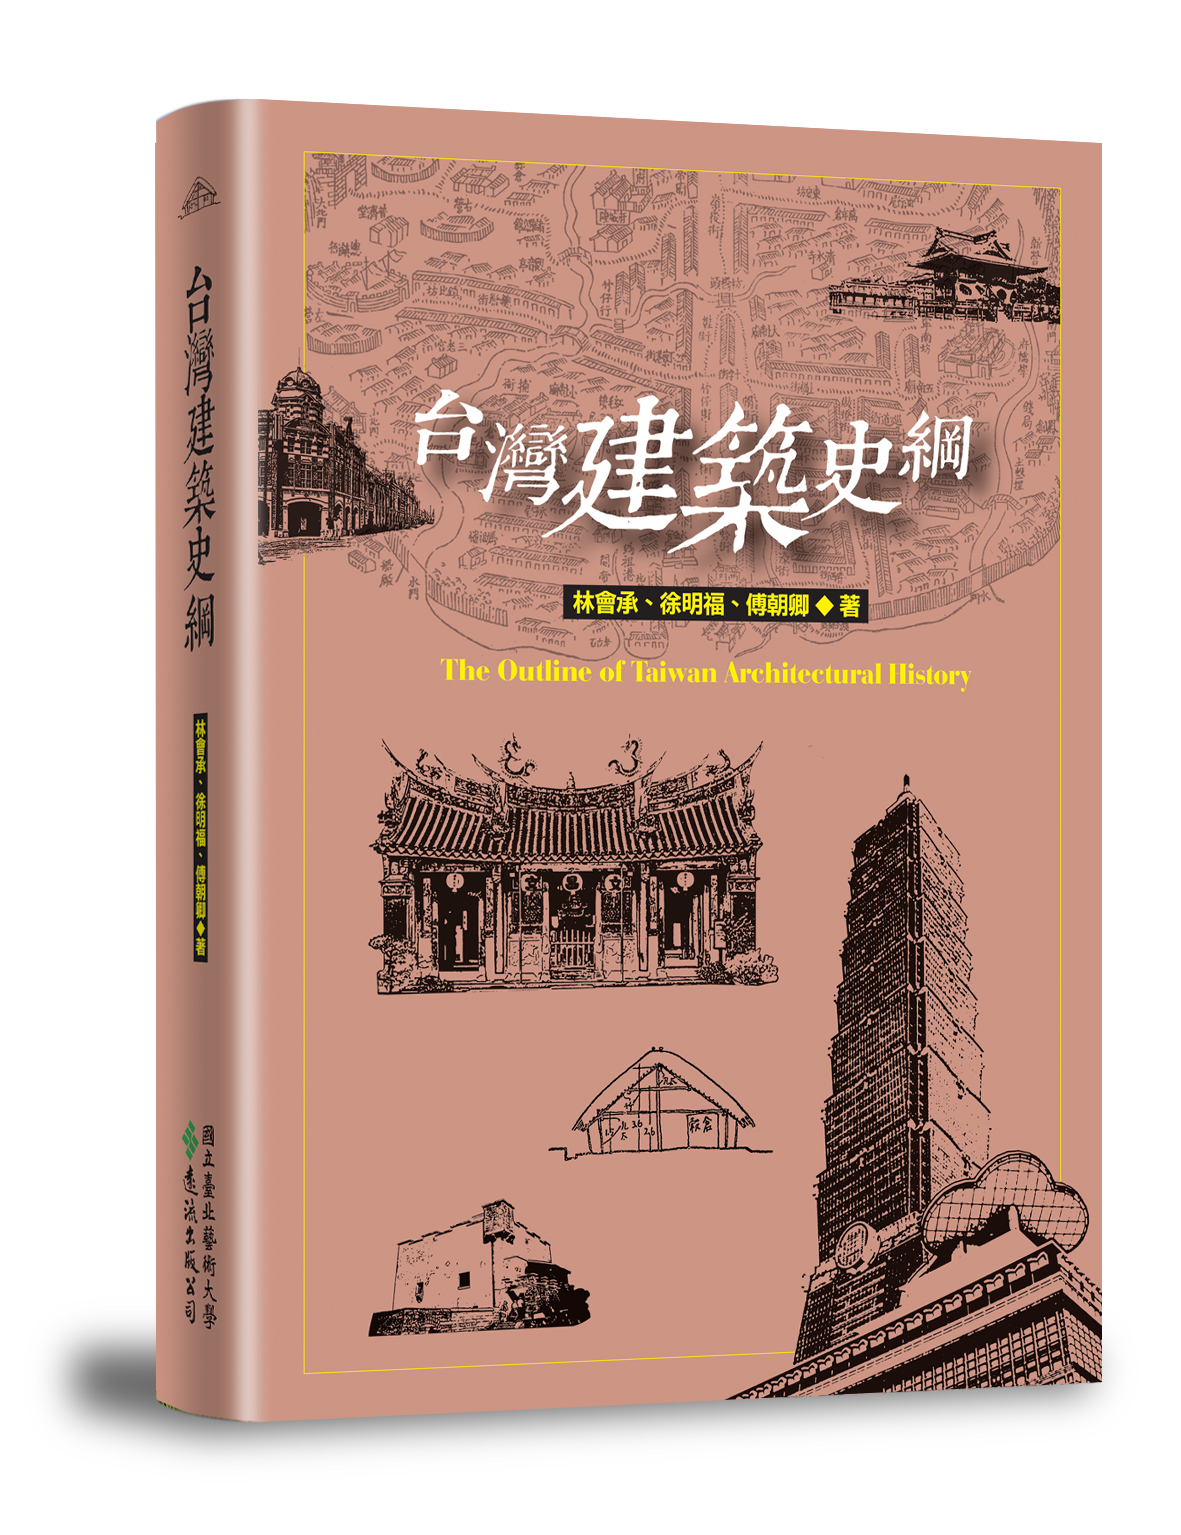 《台灣建築史綱》